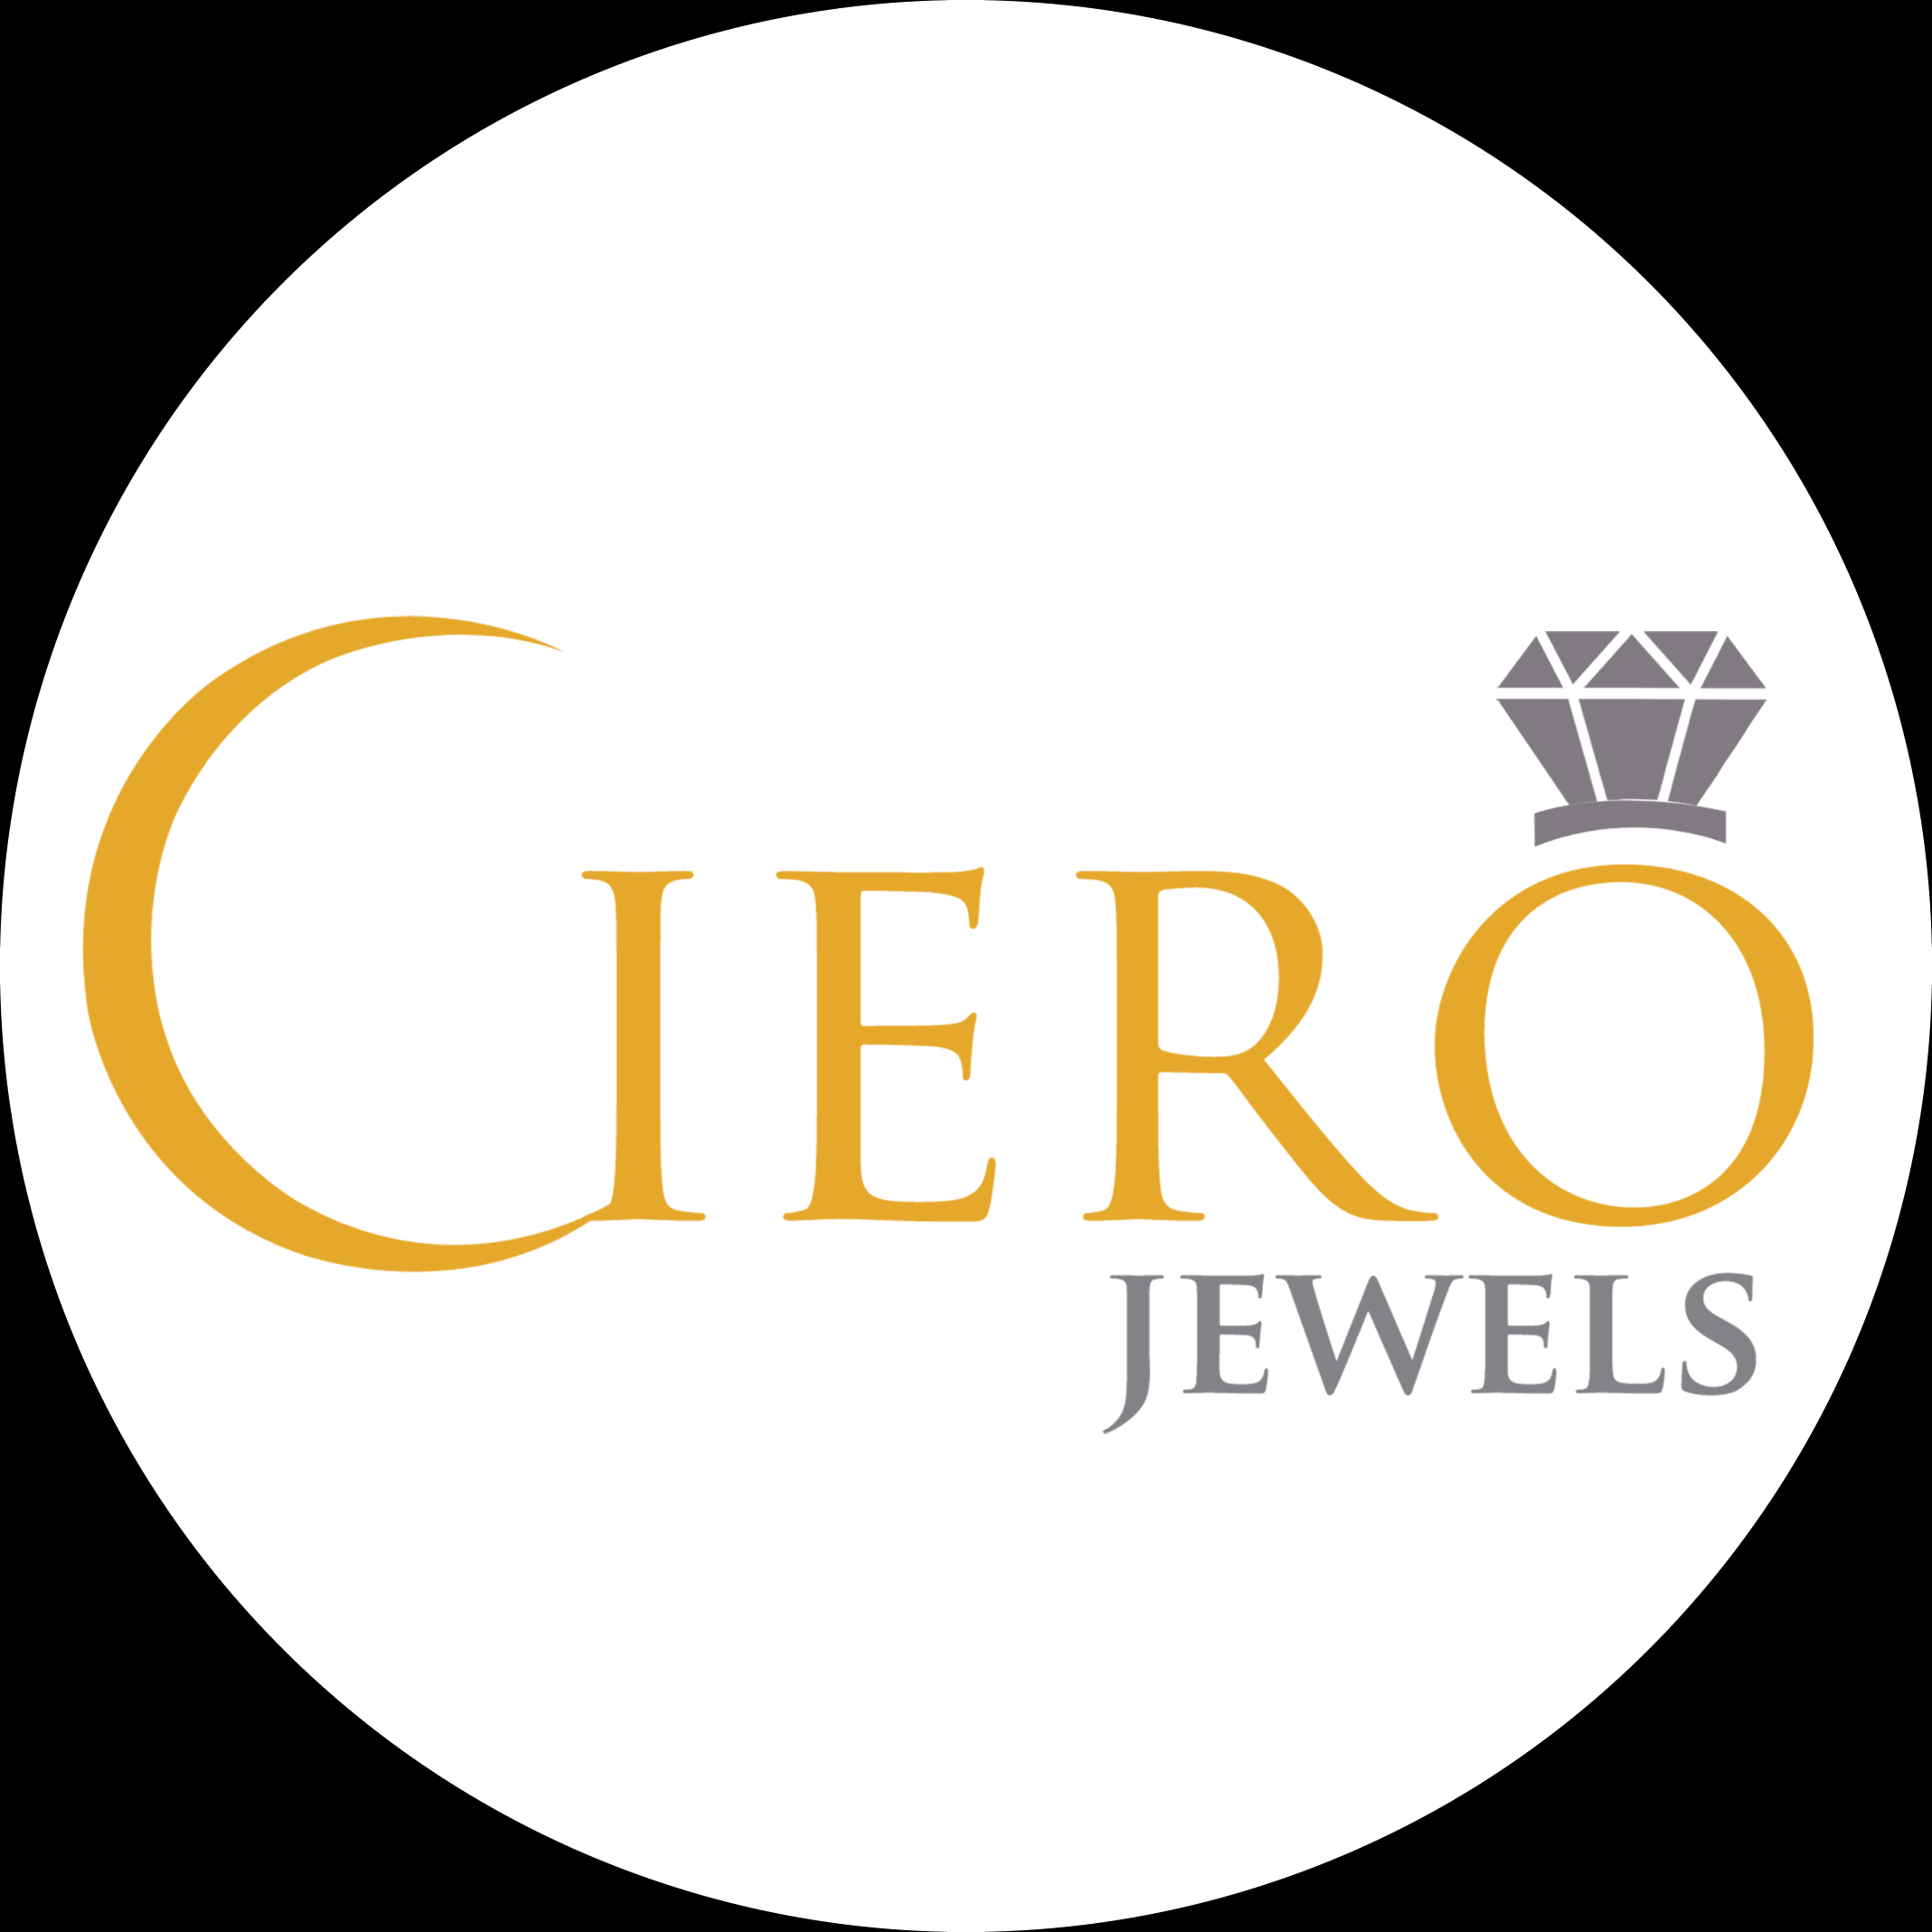 CieroJewels-Artificial Jewellery